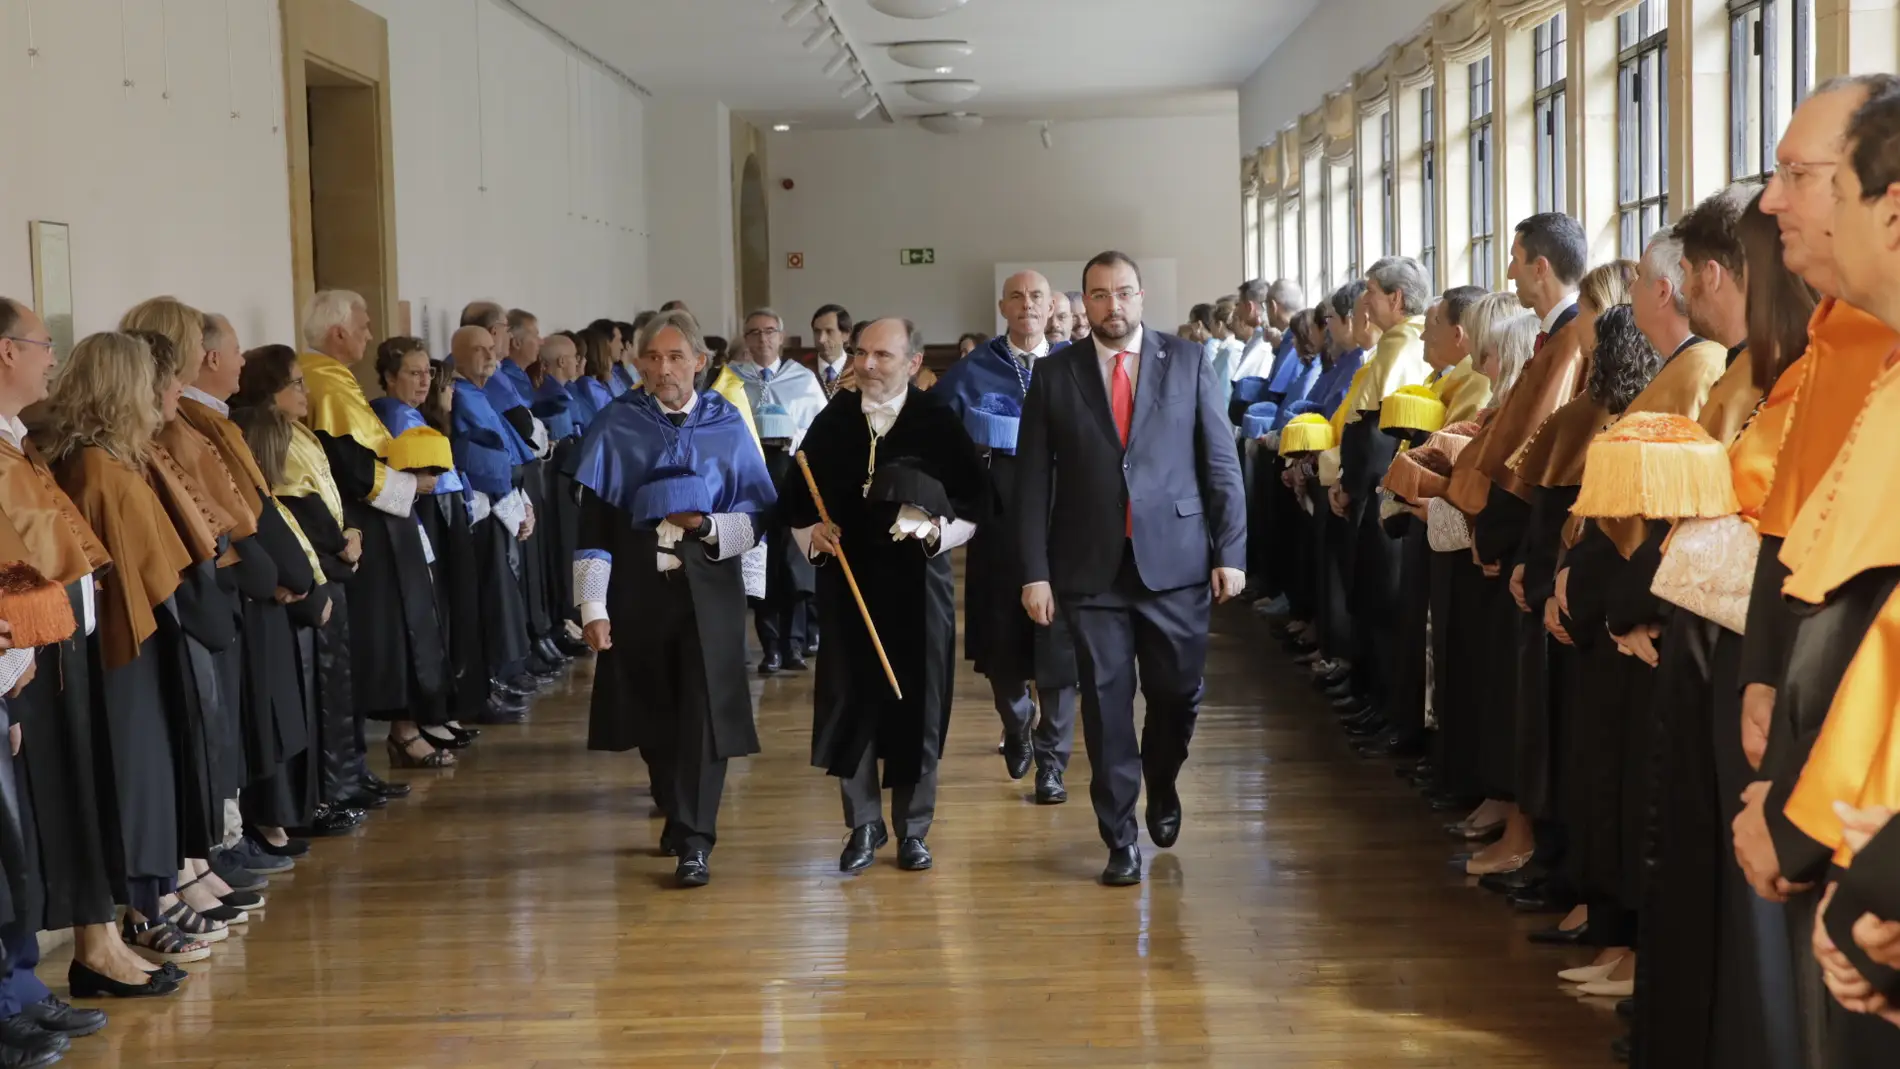 La Universidad de Oviedo cuenta con 500 estudiantes más que hace un año 